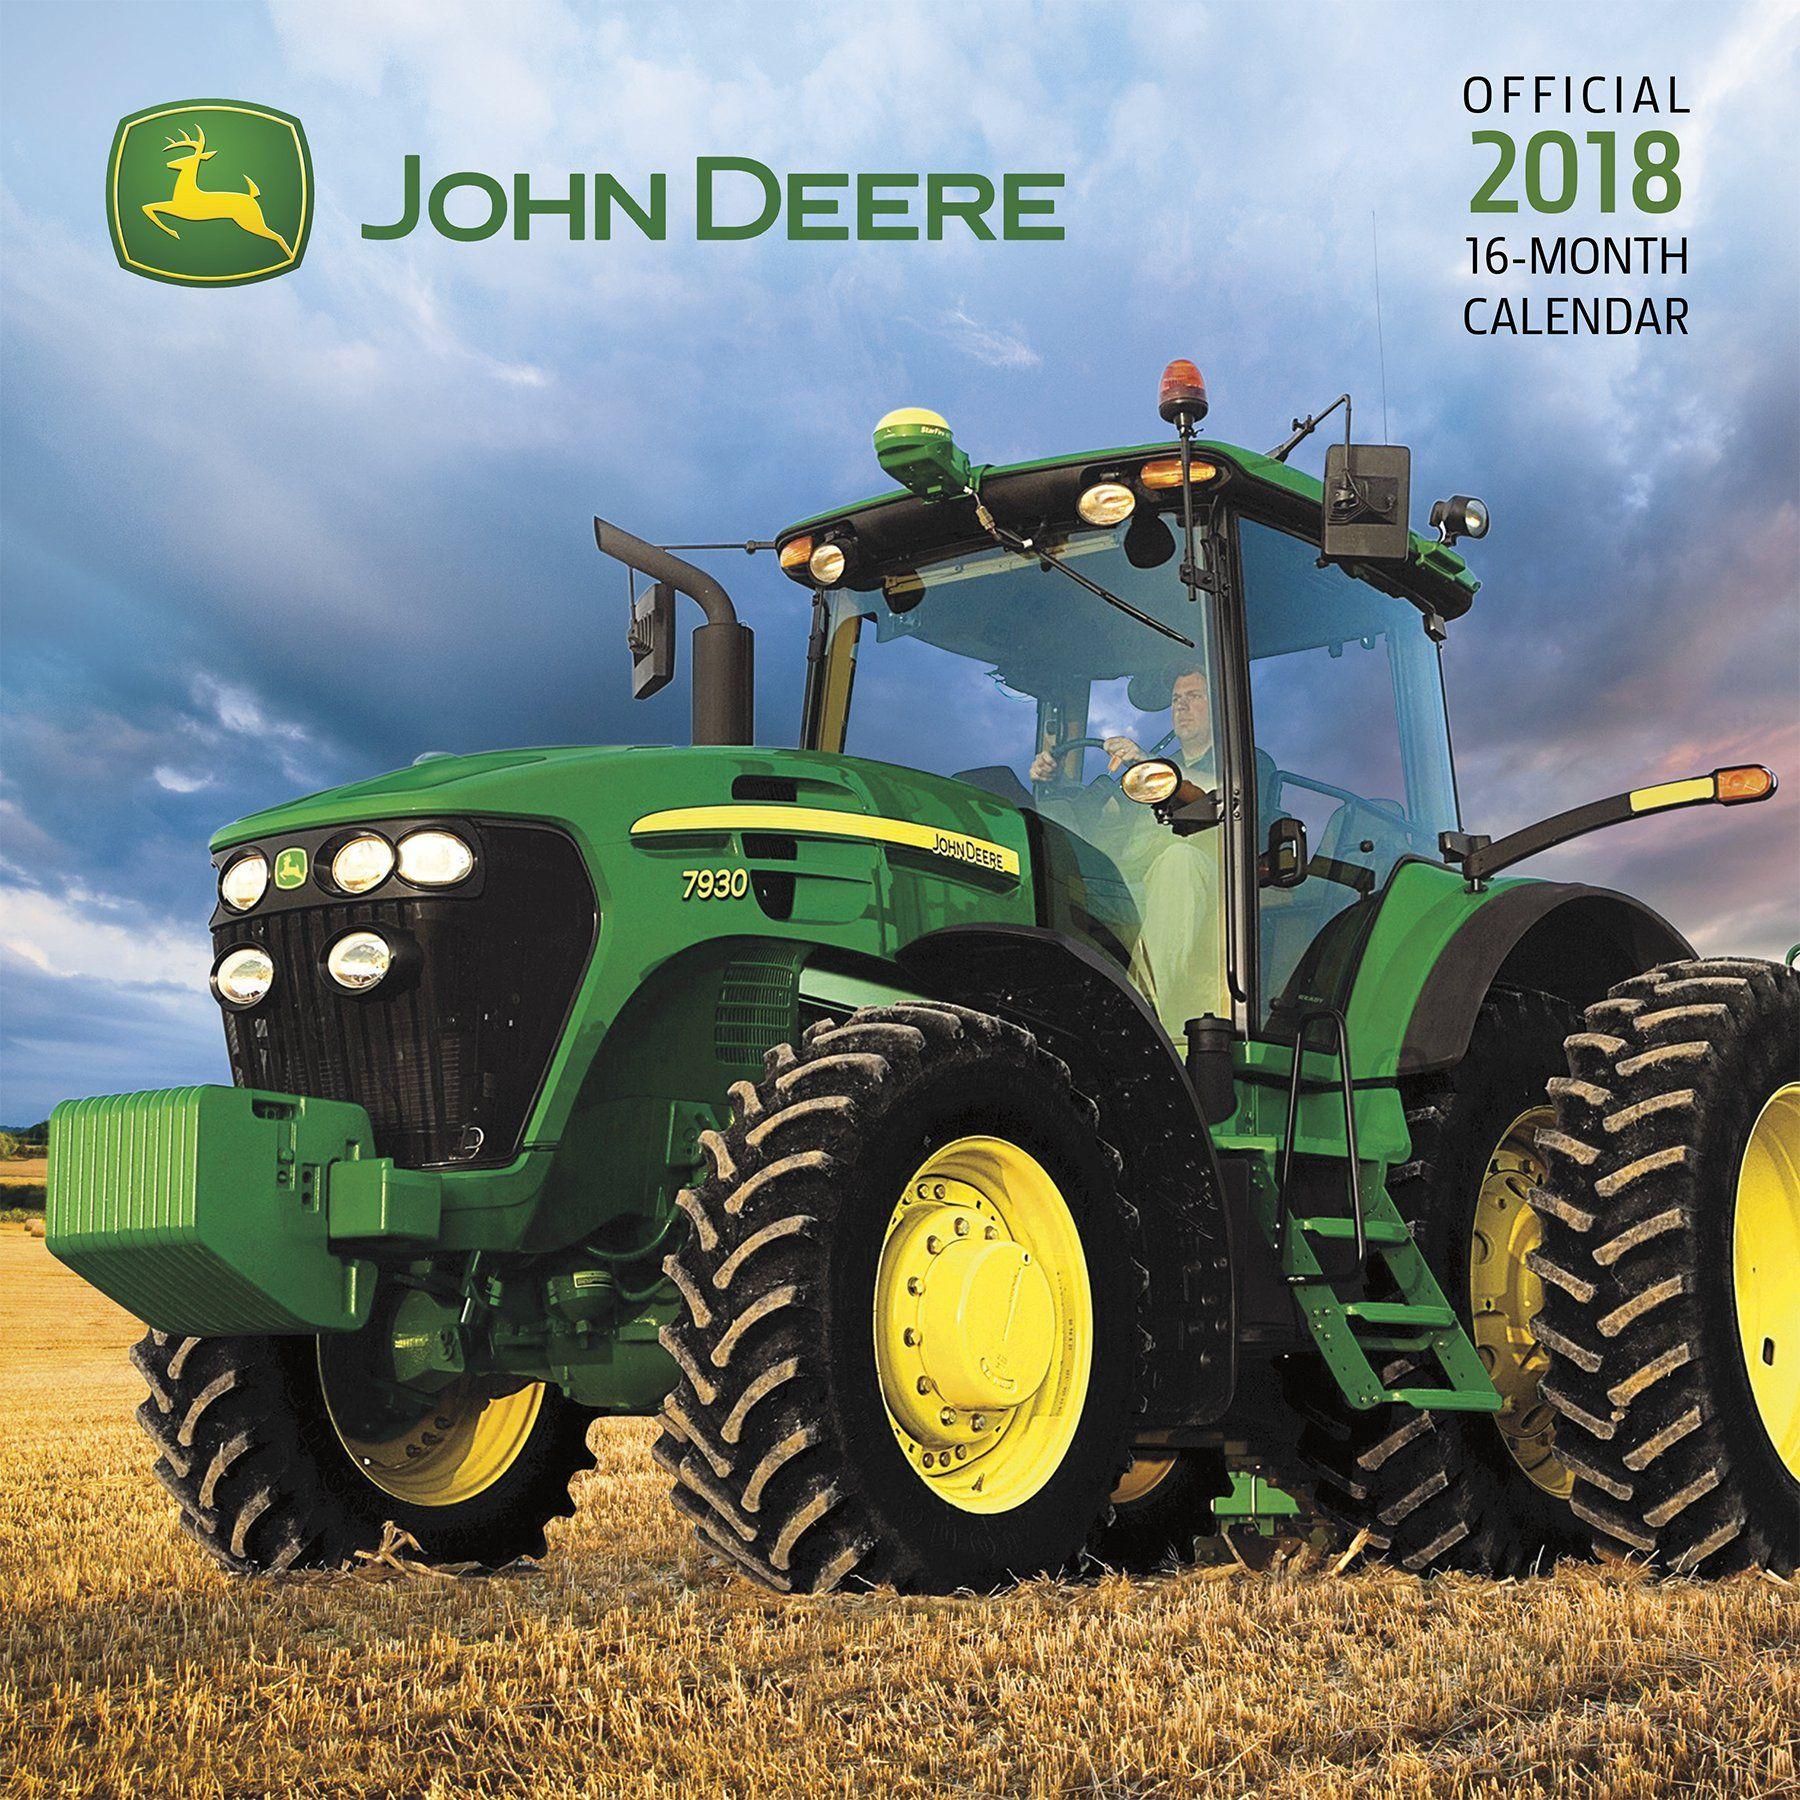 2018 John Deere Logo - Buy John Deere 2018 Calendar Book Online at Low Prices in India